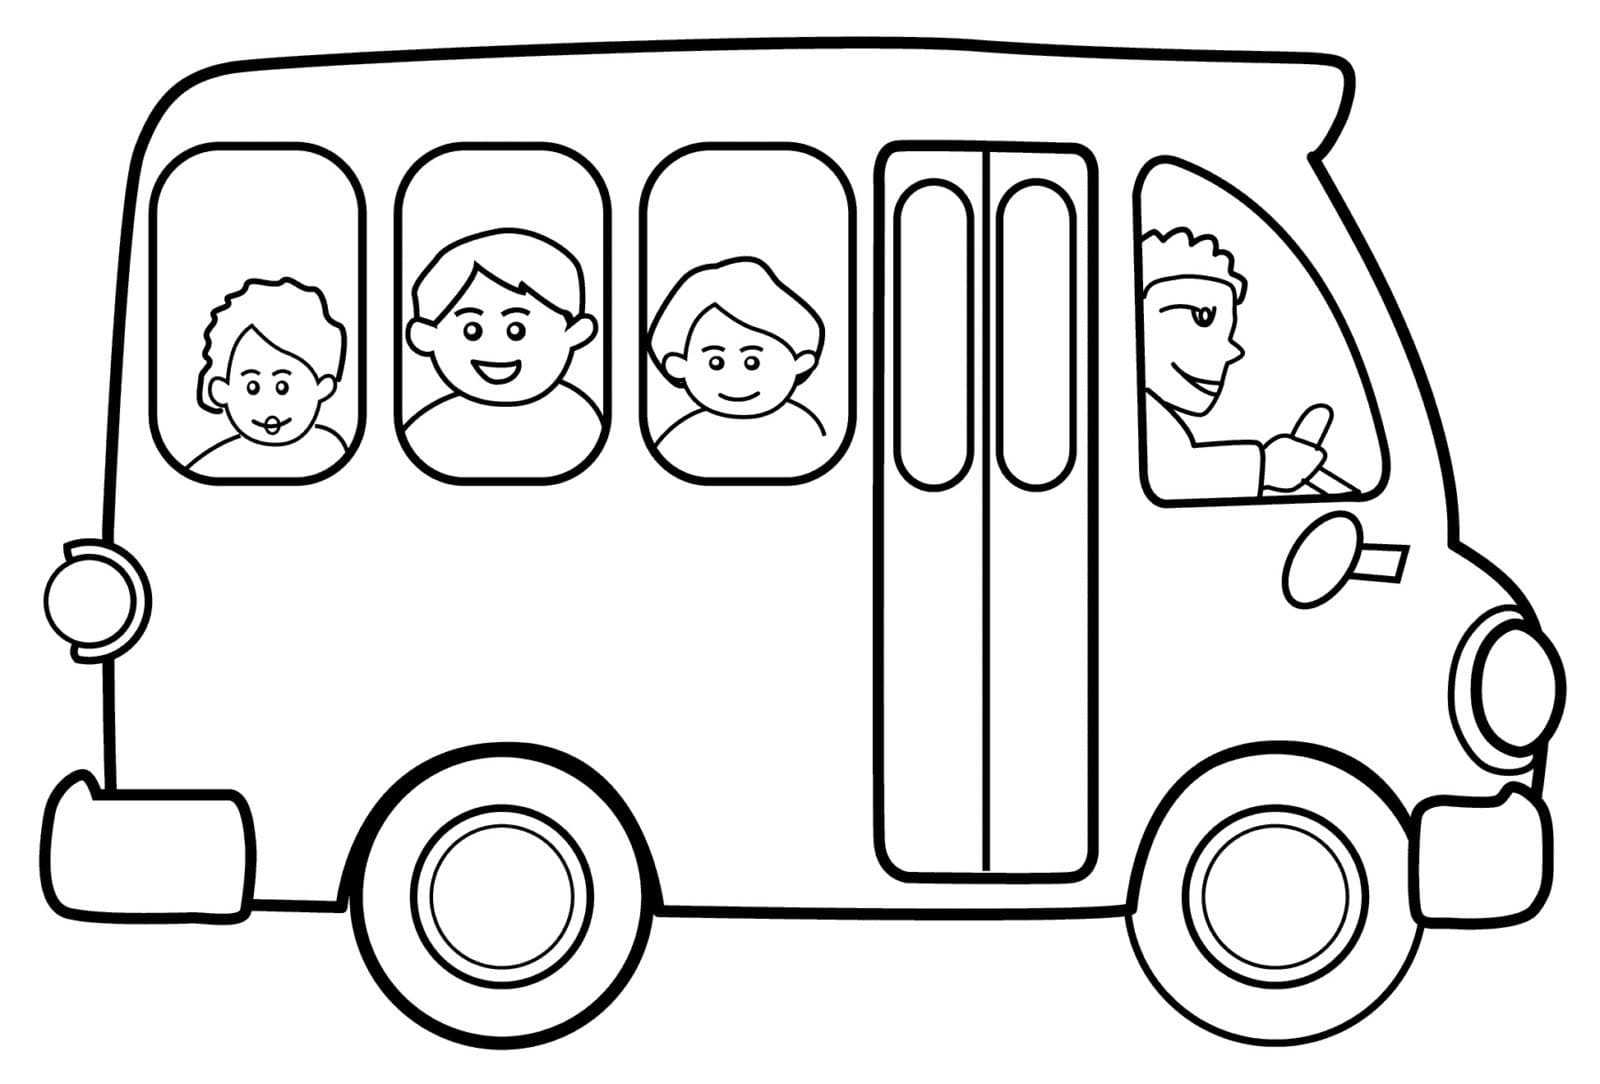 Раскраски Автобус – раздел, собравший черно-белые изображения одного из самых распространенных видов общественного транспорта в мире Мы собрали лучшую коллекцию раскрасок Автобусов, которые можно бесплатно скачать или распечатать в формате А4